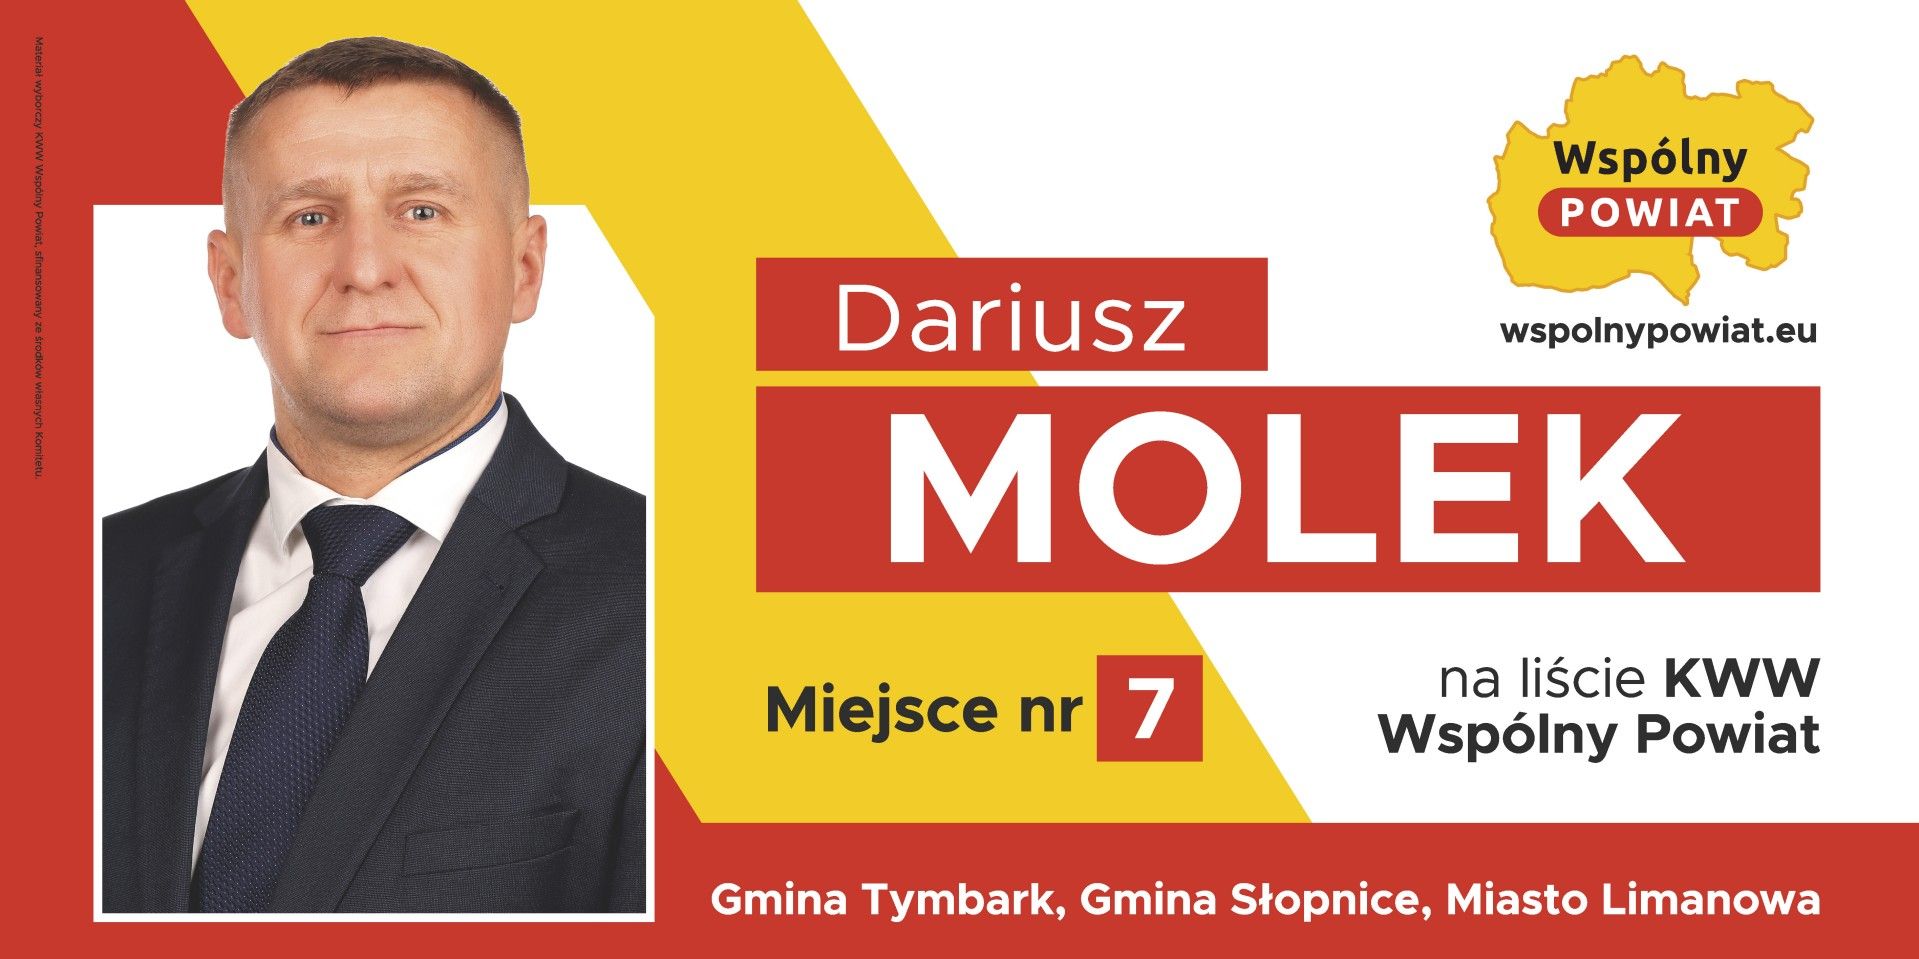 Dariusz Molek